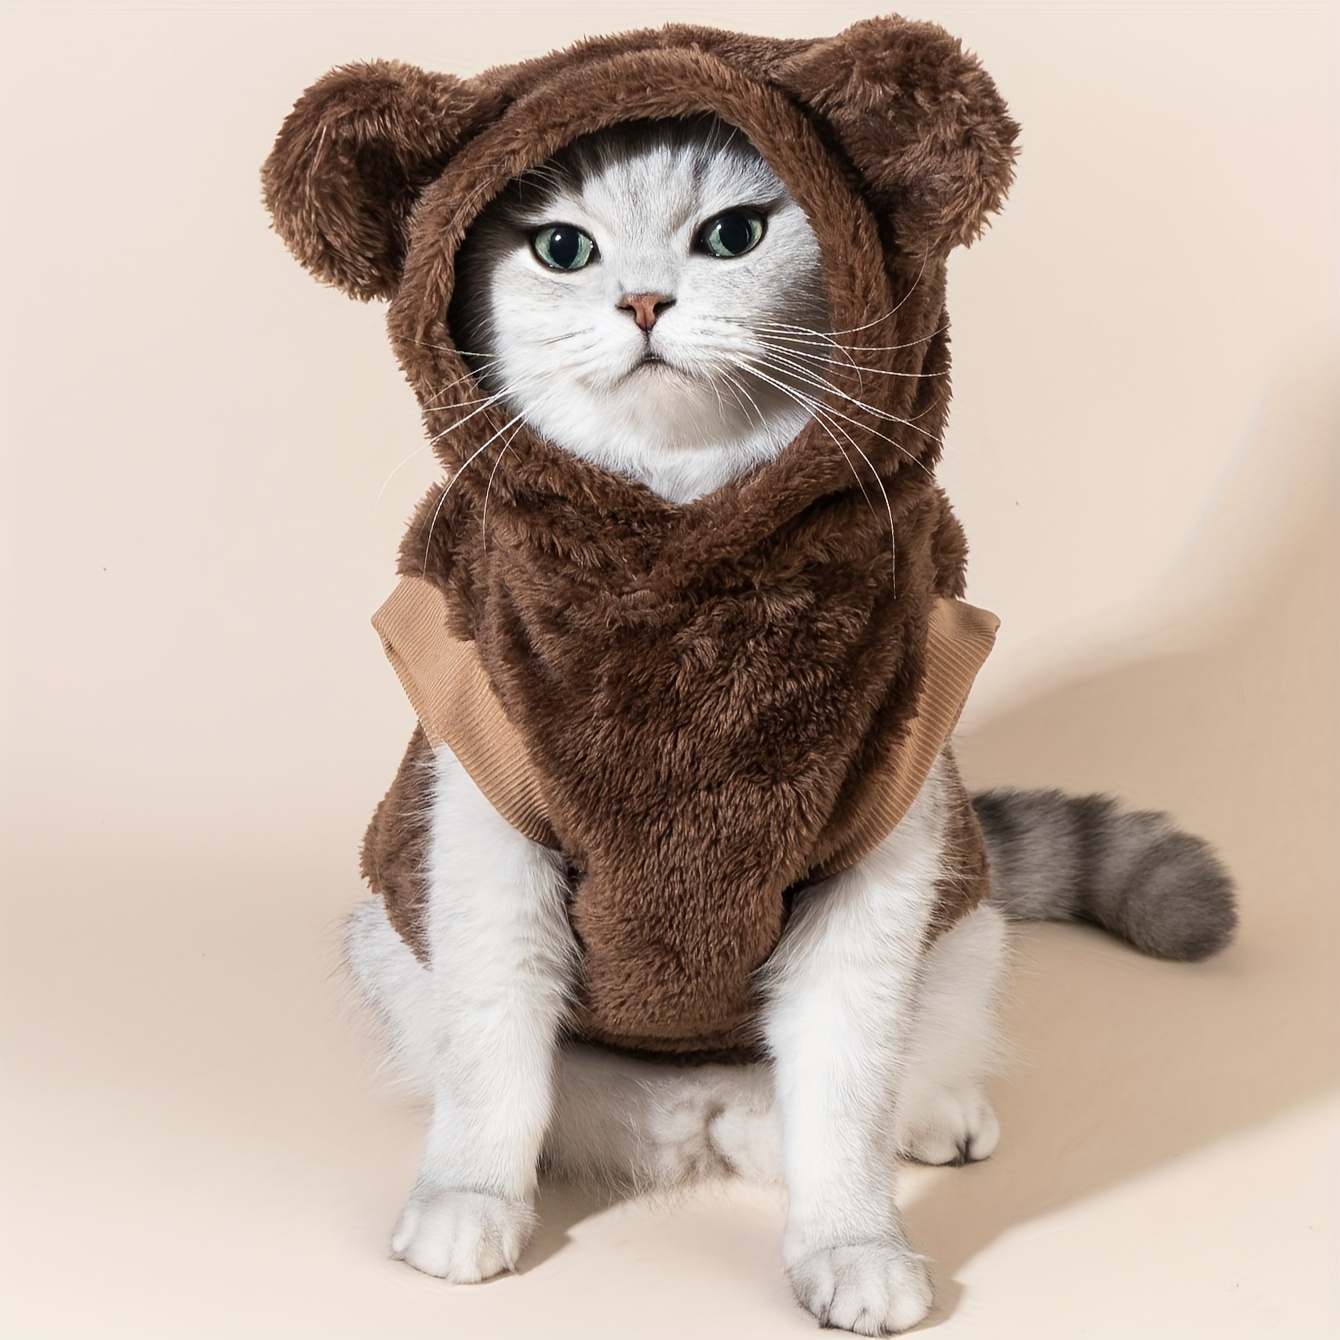 Sudadera niños con capucha para vestir gatos enamorados ✓